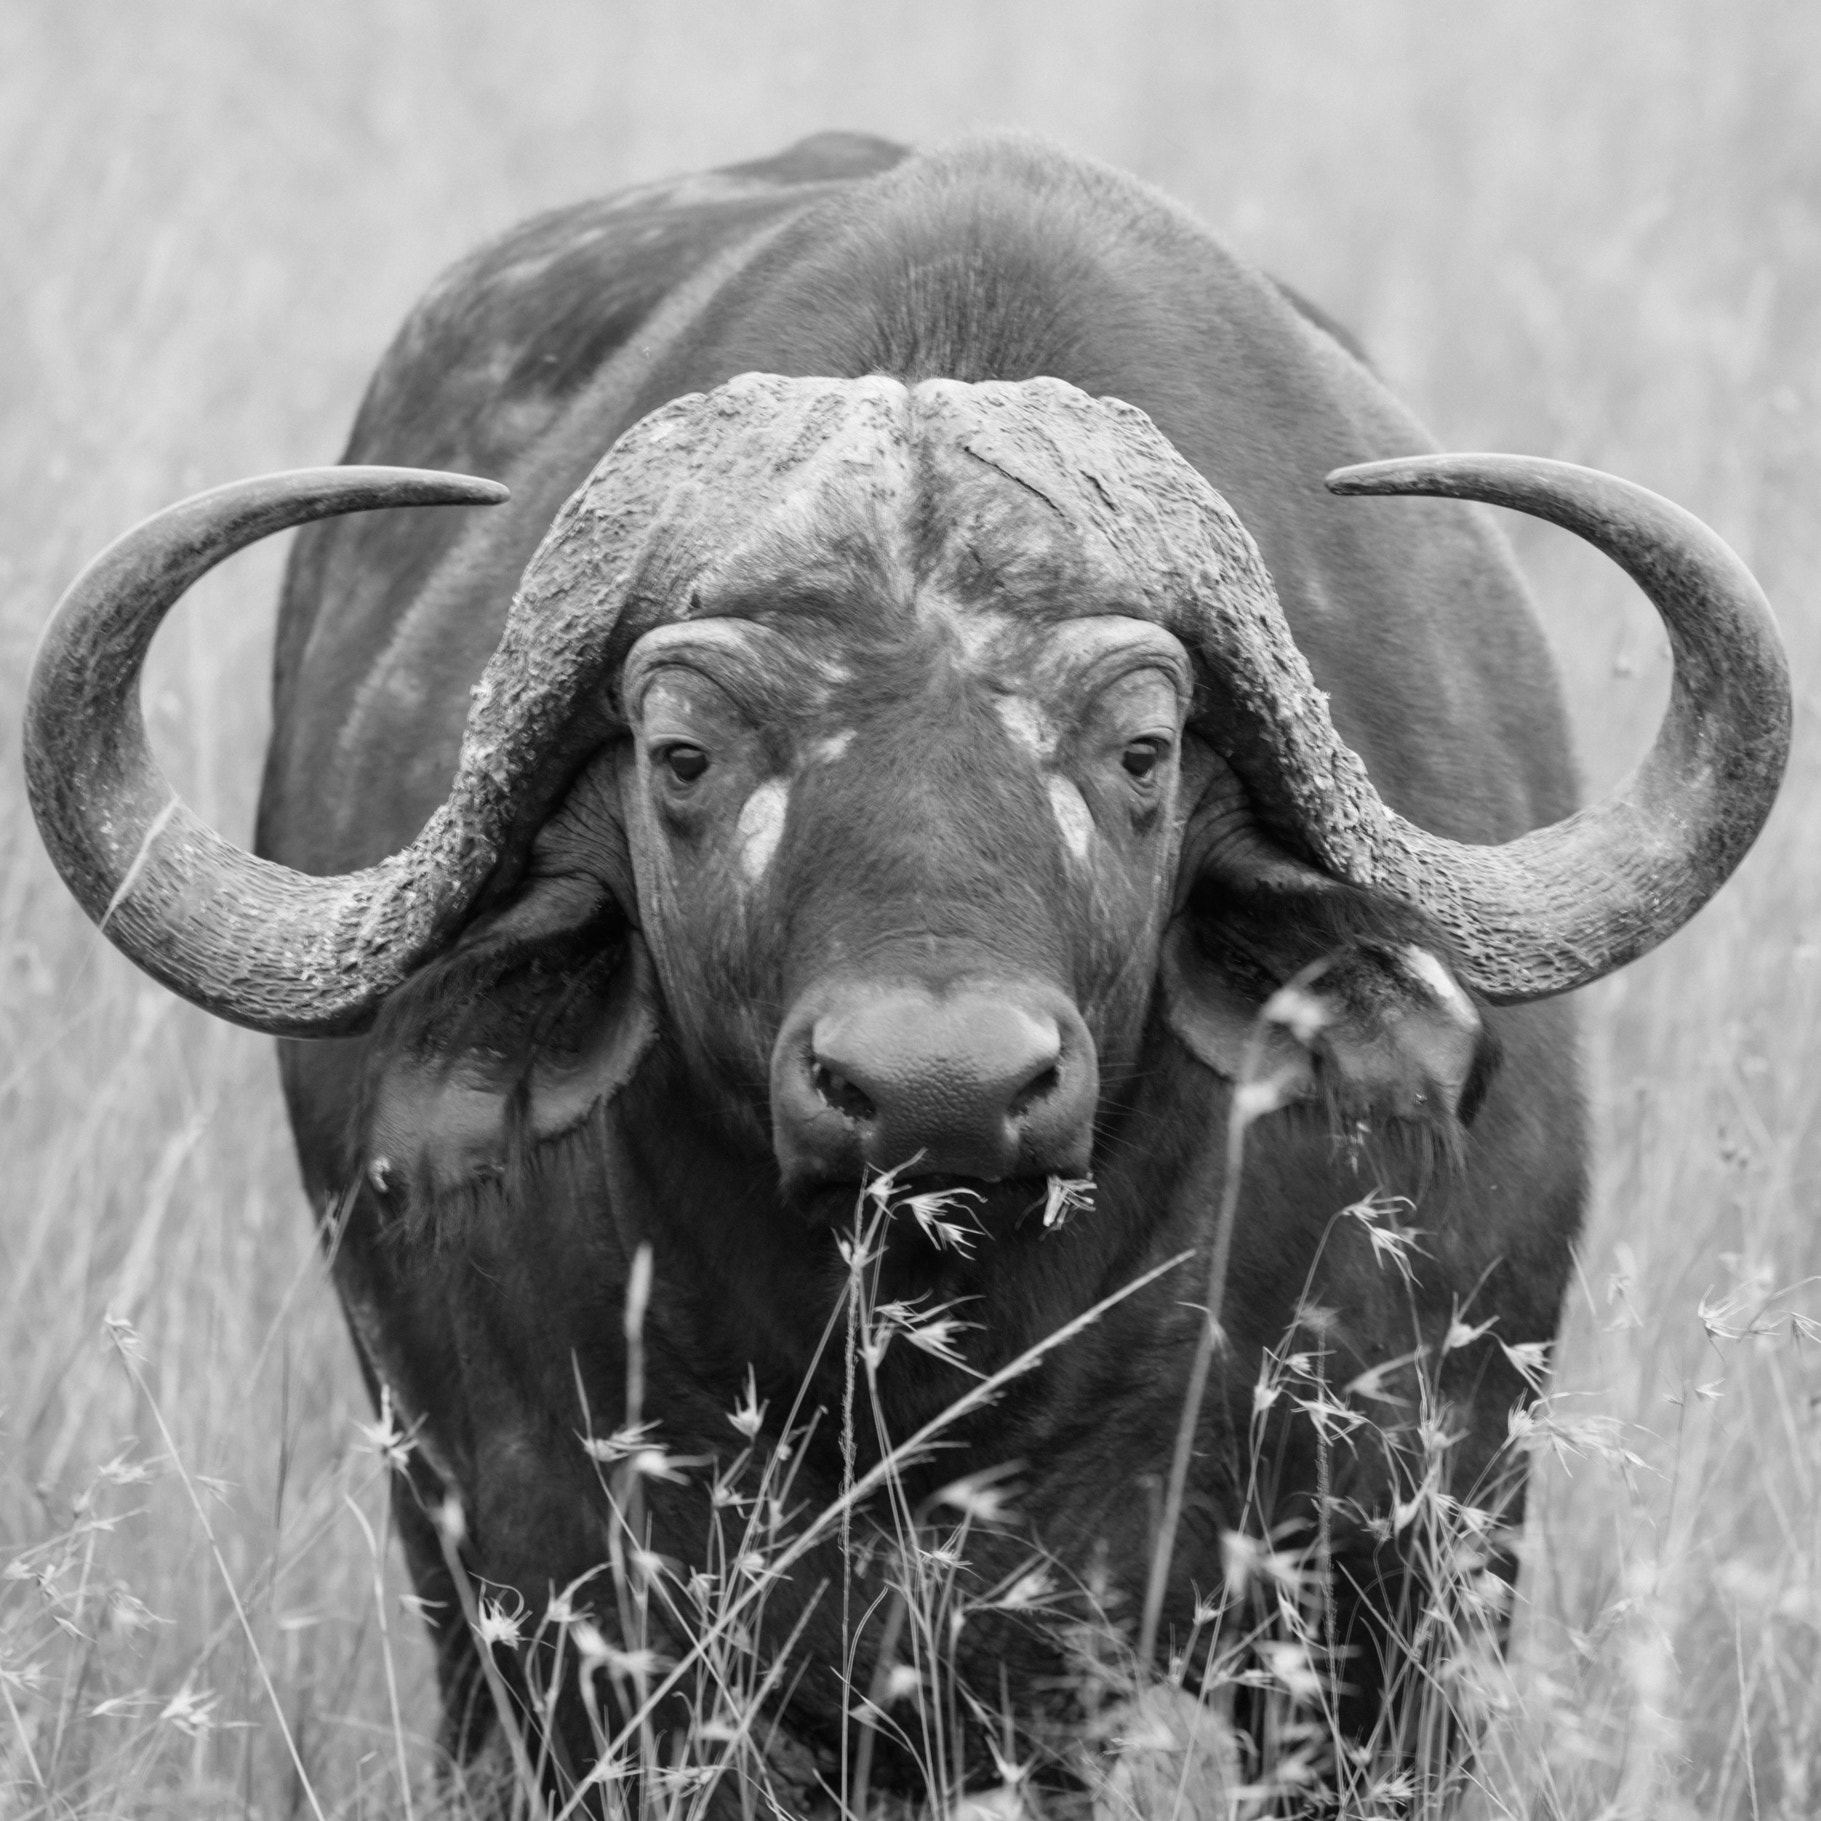 Canon EOS 5DS sample photo. Masai buffalo photography